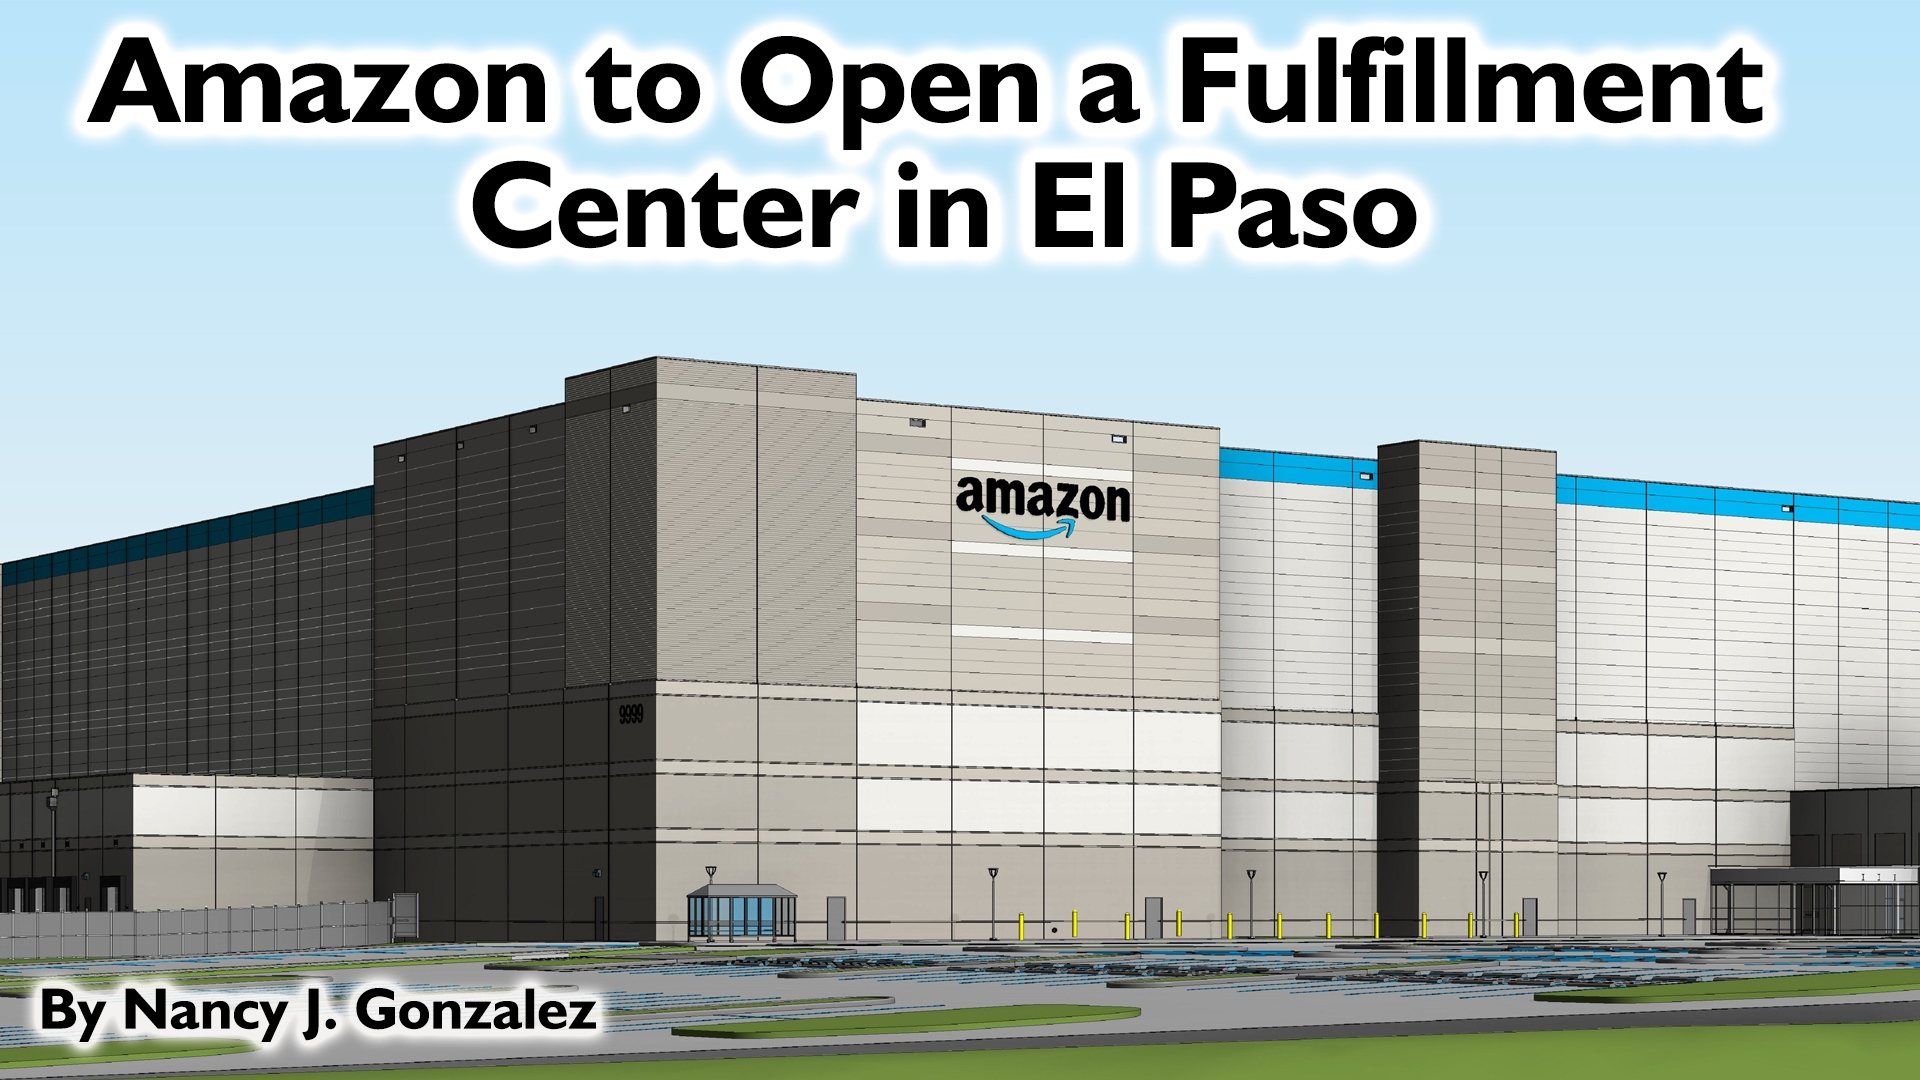 Amazon to Open a Fulfillment Center in El Paso